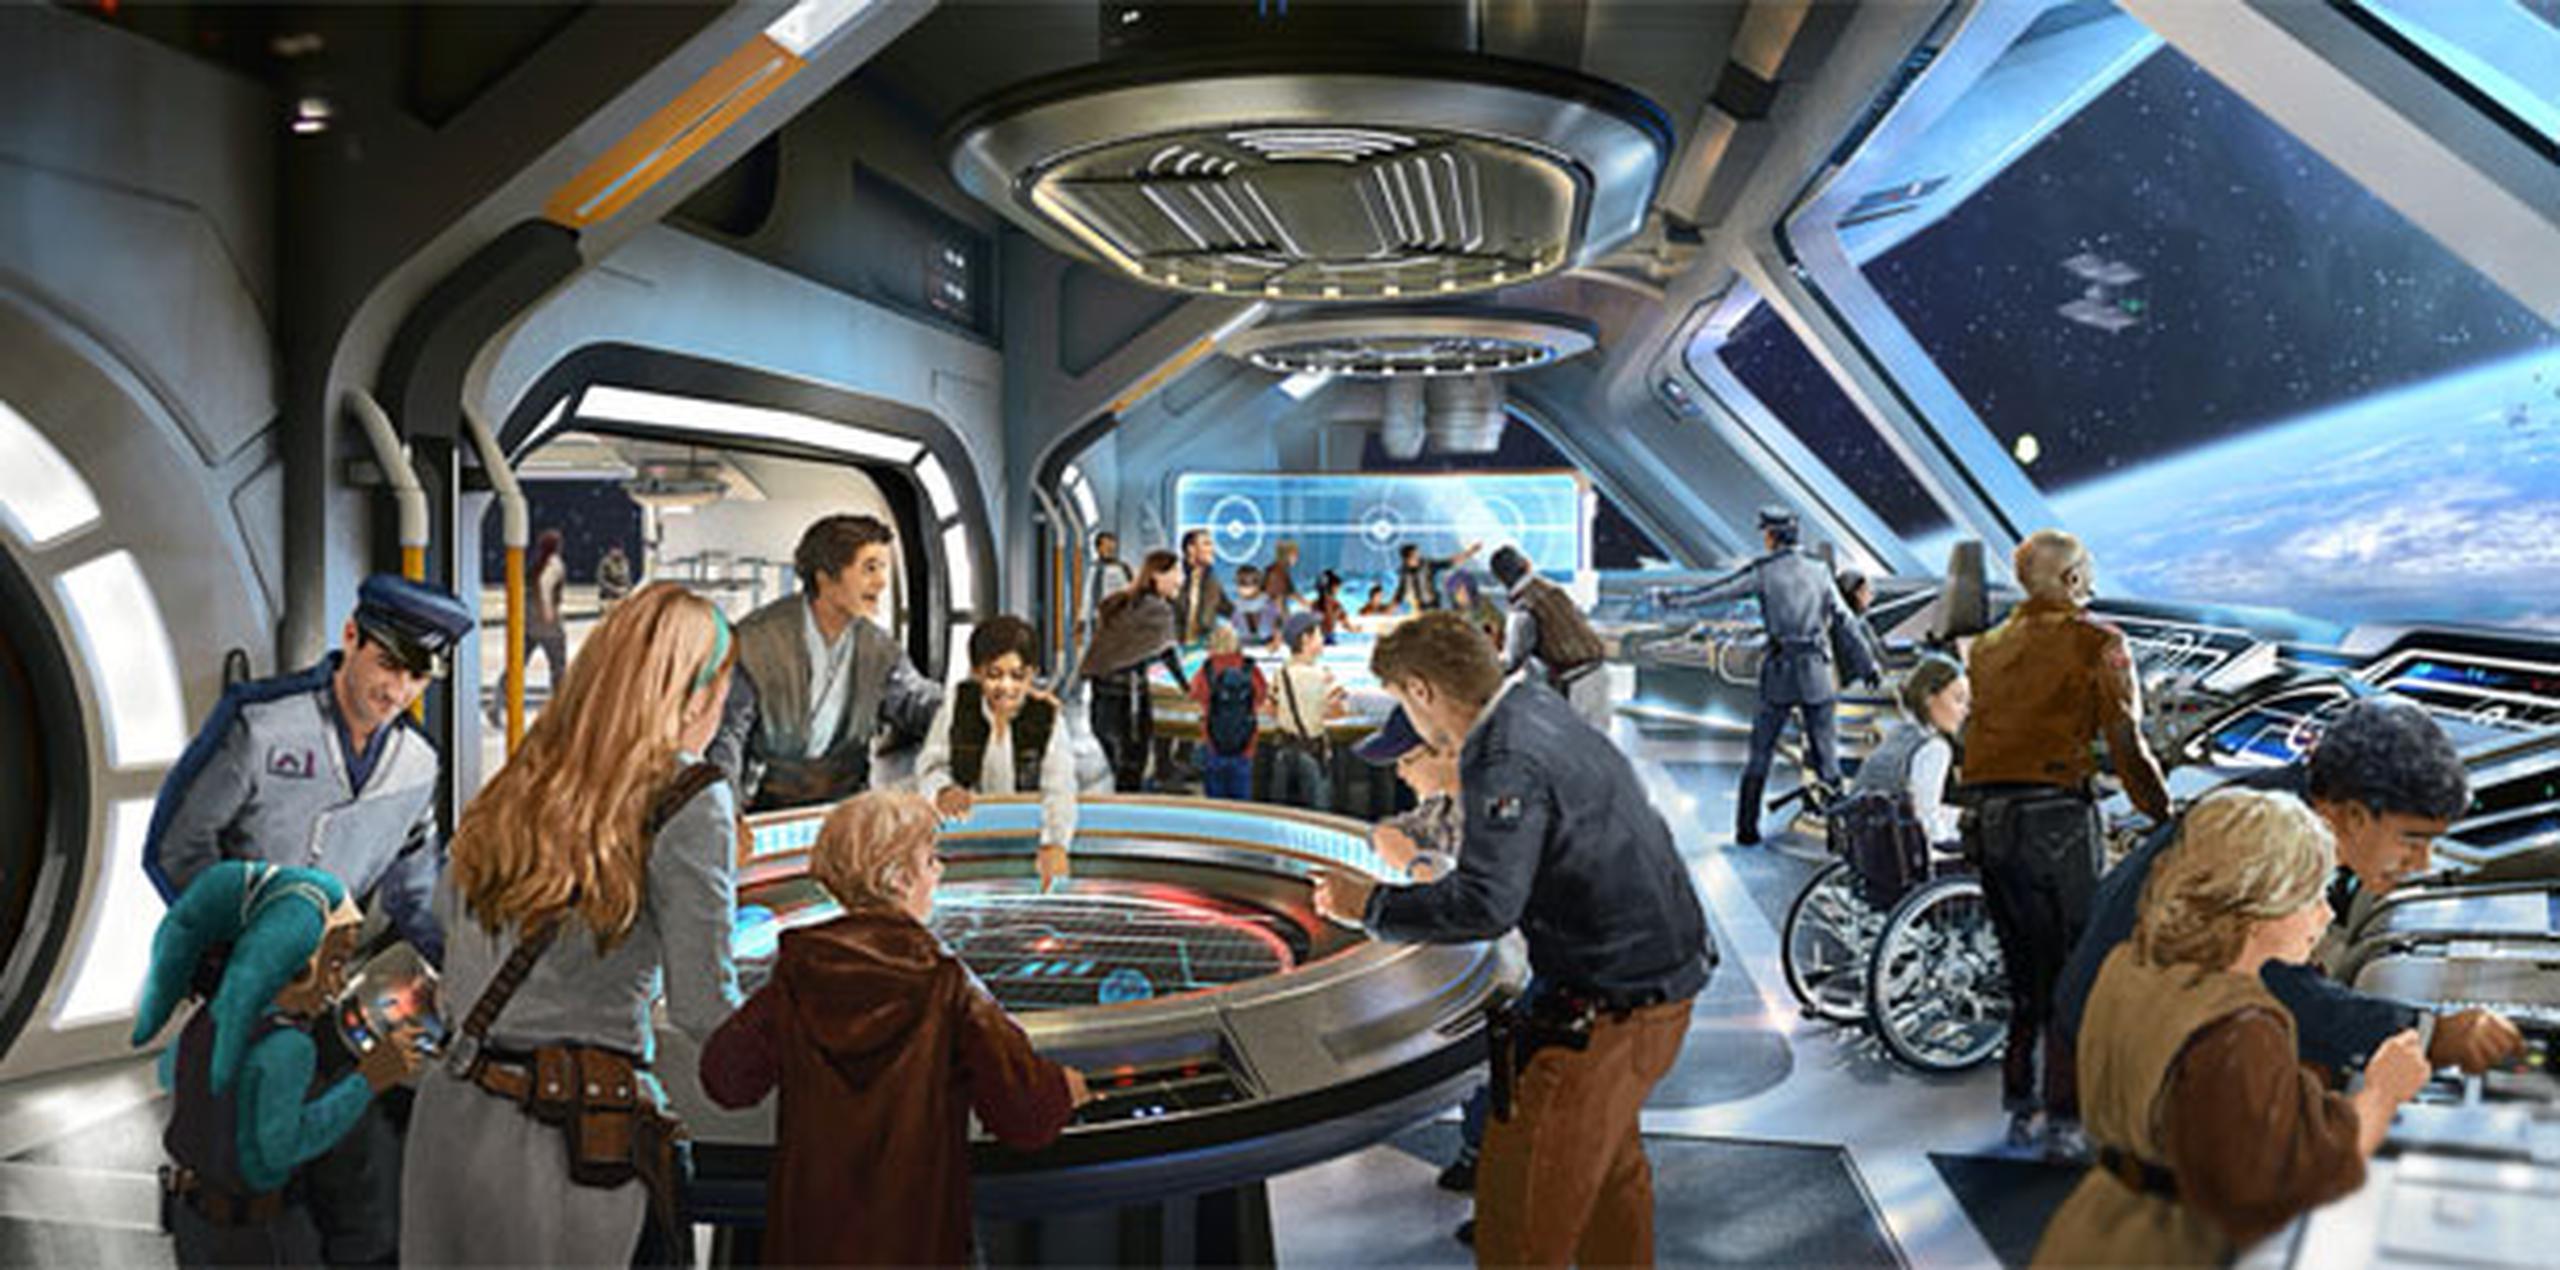 Los aficionados podrán visitar en 2019 la nueva "tierra" de Disney dedicada a la "Guerra de las Galaxias" tanto en Disneyland Park, en California, como en Hollywood Studios, en Florida. (Suministrada)